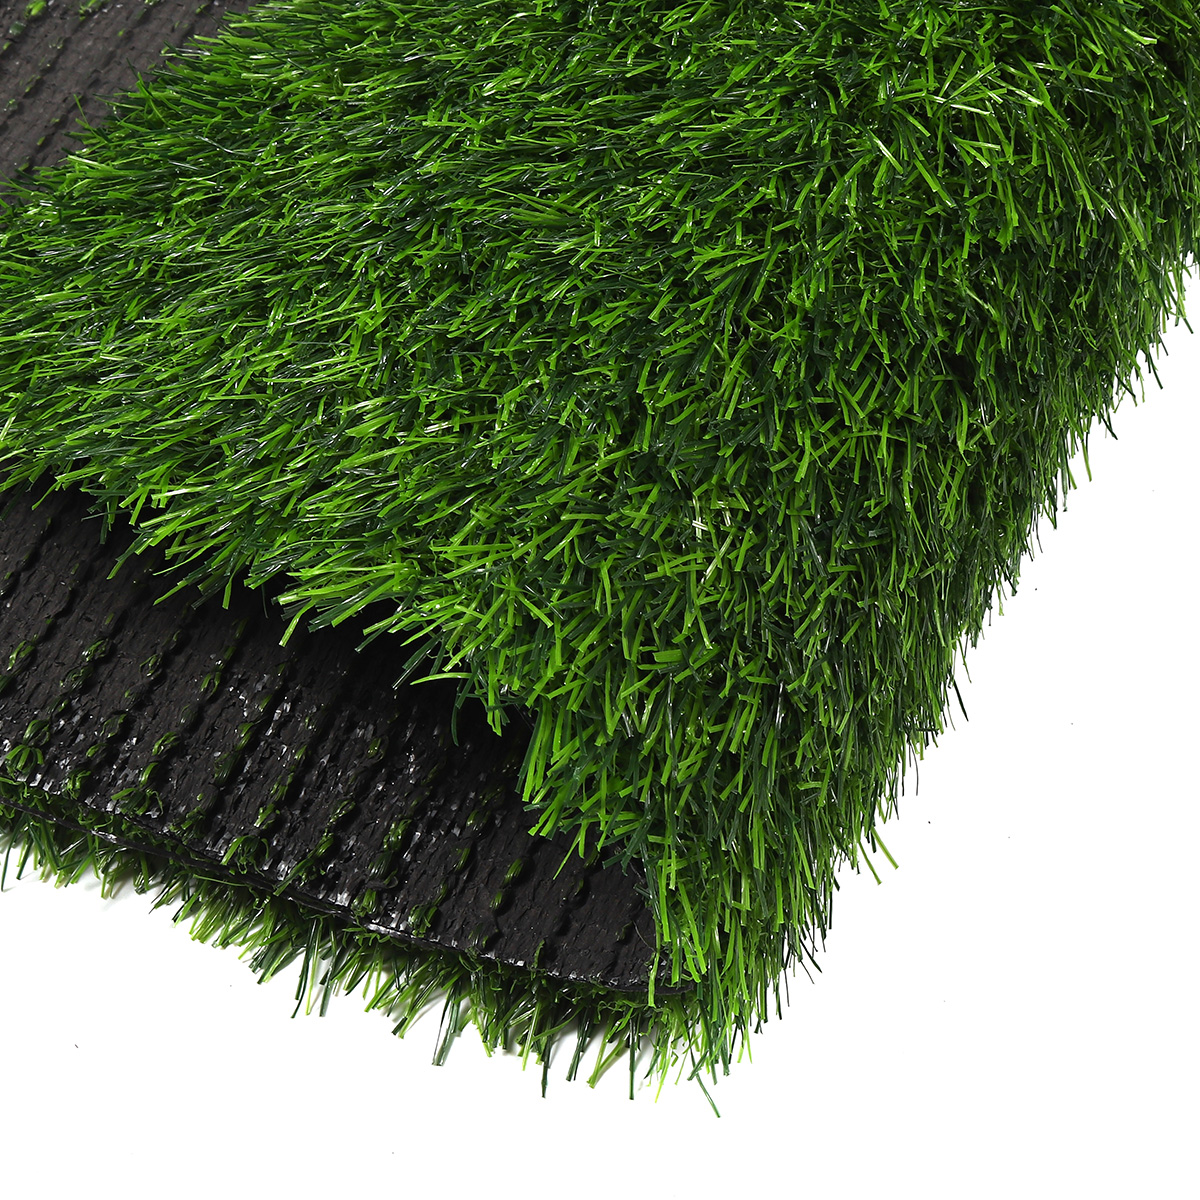 Artificial-Green-Grass-Carpet-Mat-Artificial-Lawns-Turf-Carpets-For-Home-Garden-Micro-Landscape-1726933-6